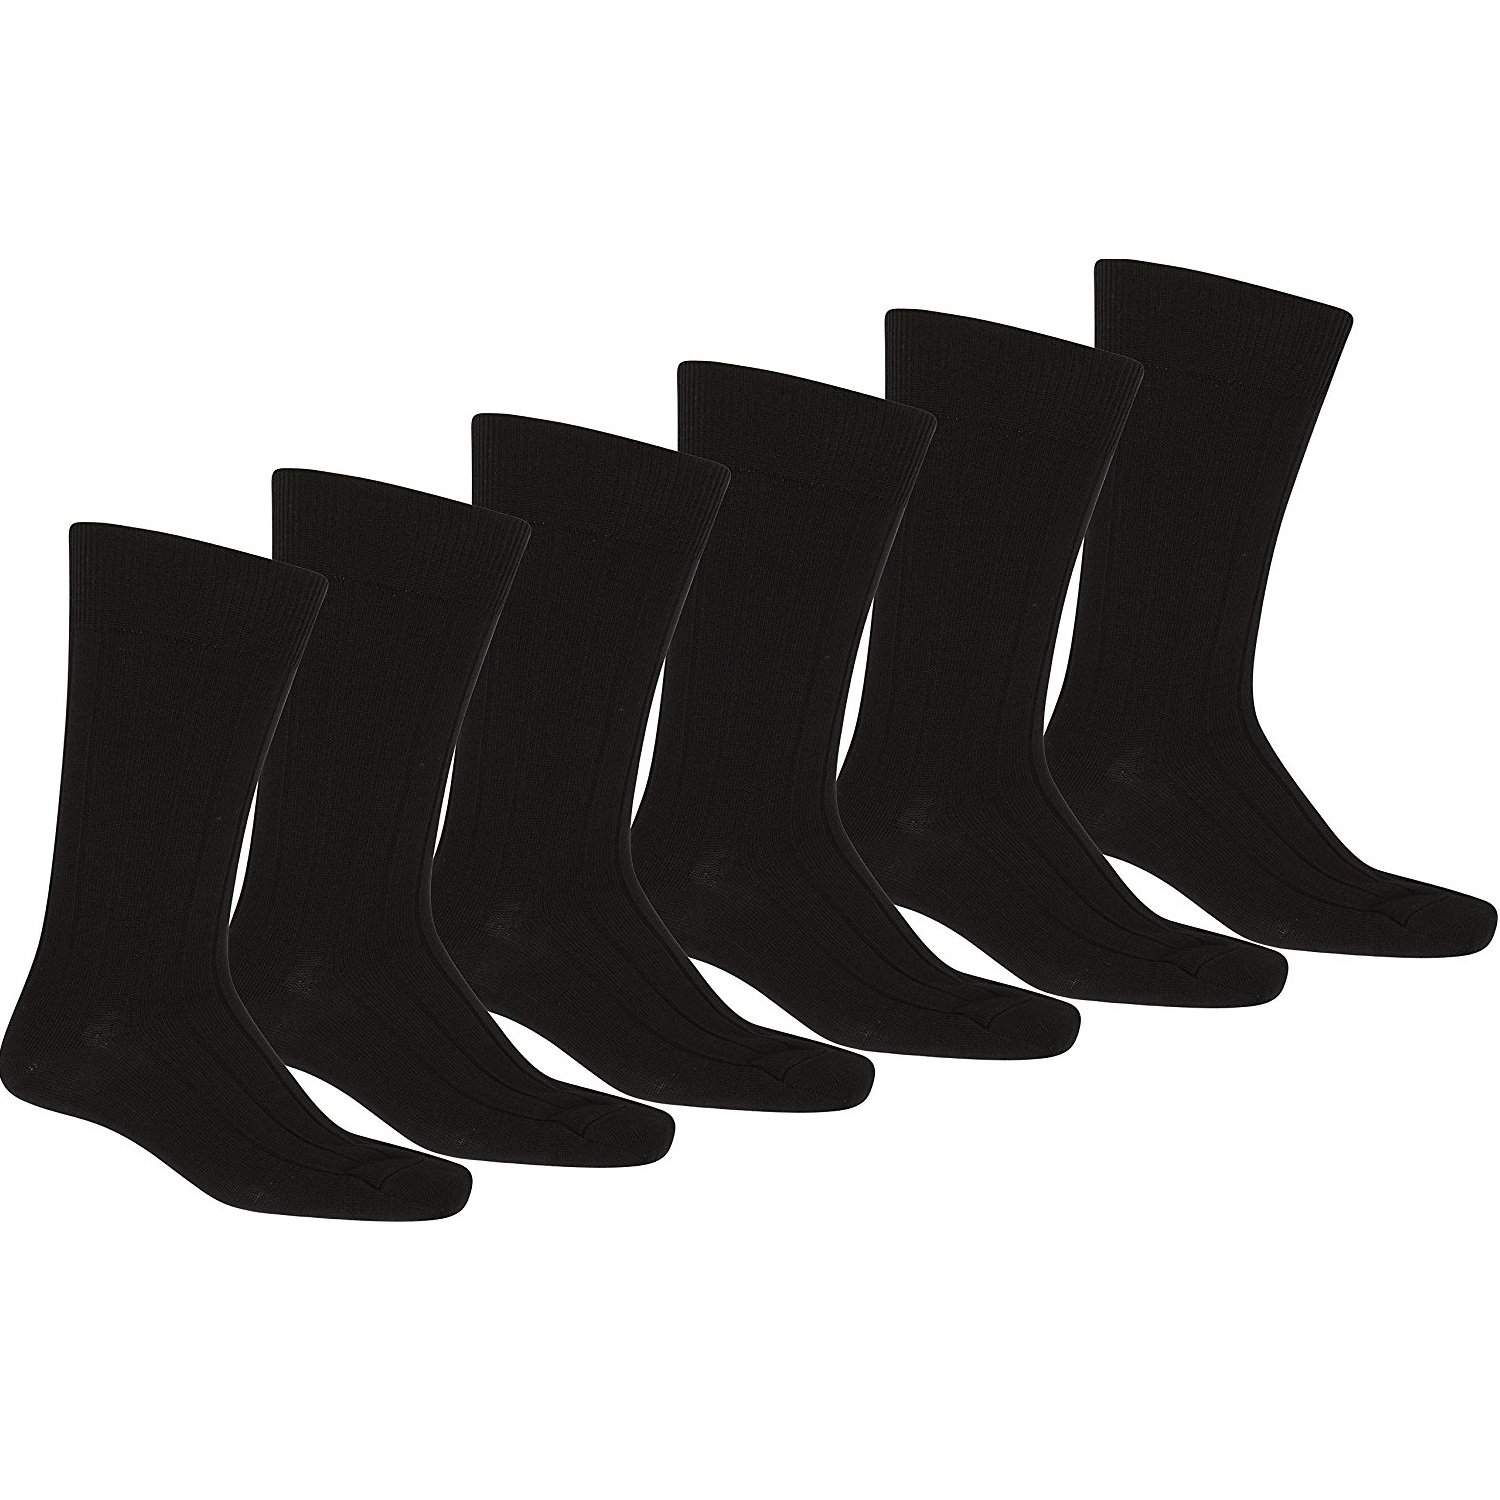 Mechaly Men 60 Pack Solid Plain Dress Socks in Black - Bulk Wholesale